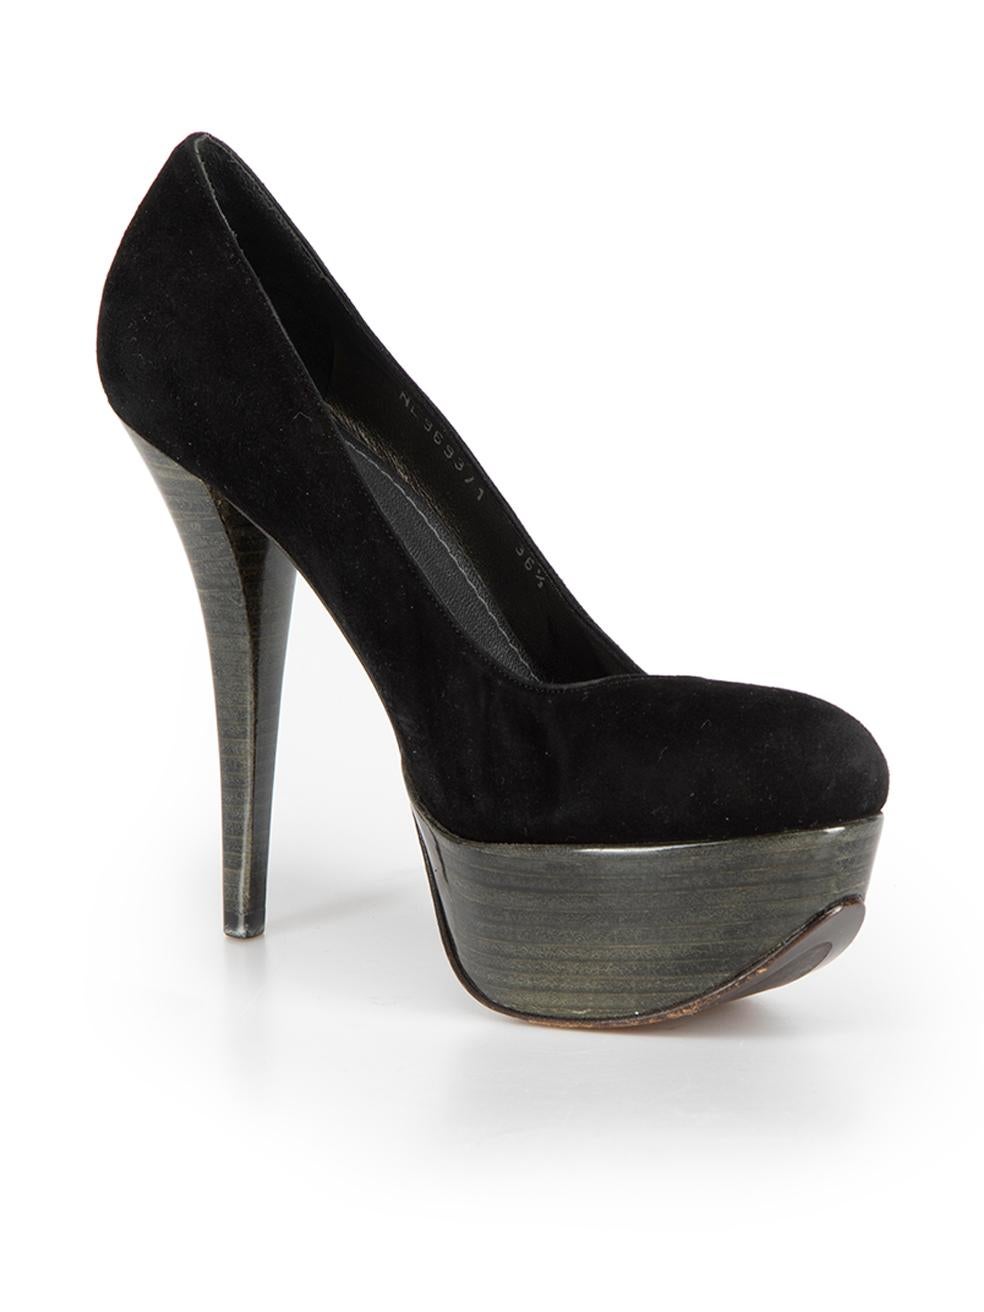 high-heel-sale | High heels sale, Heels, High heels